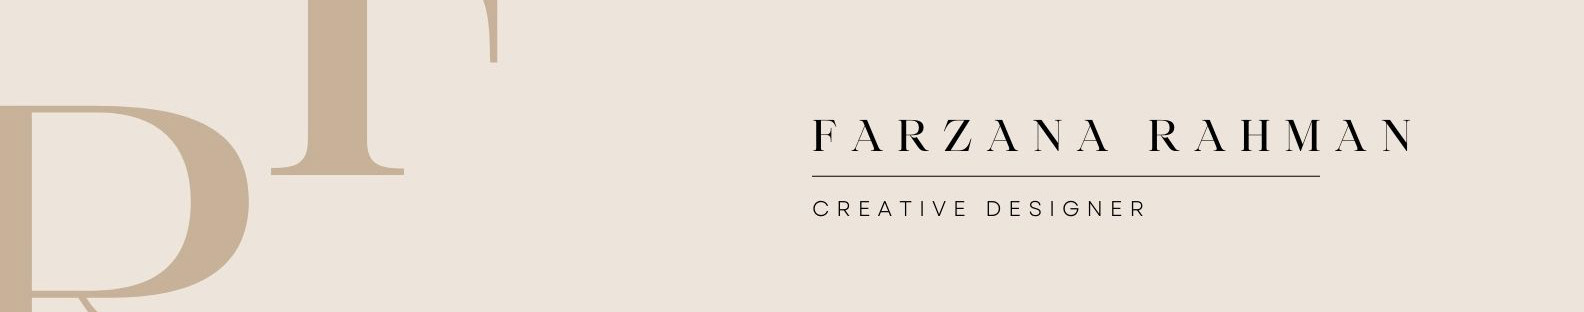 Farzana Rahman's profile banner